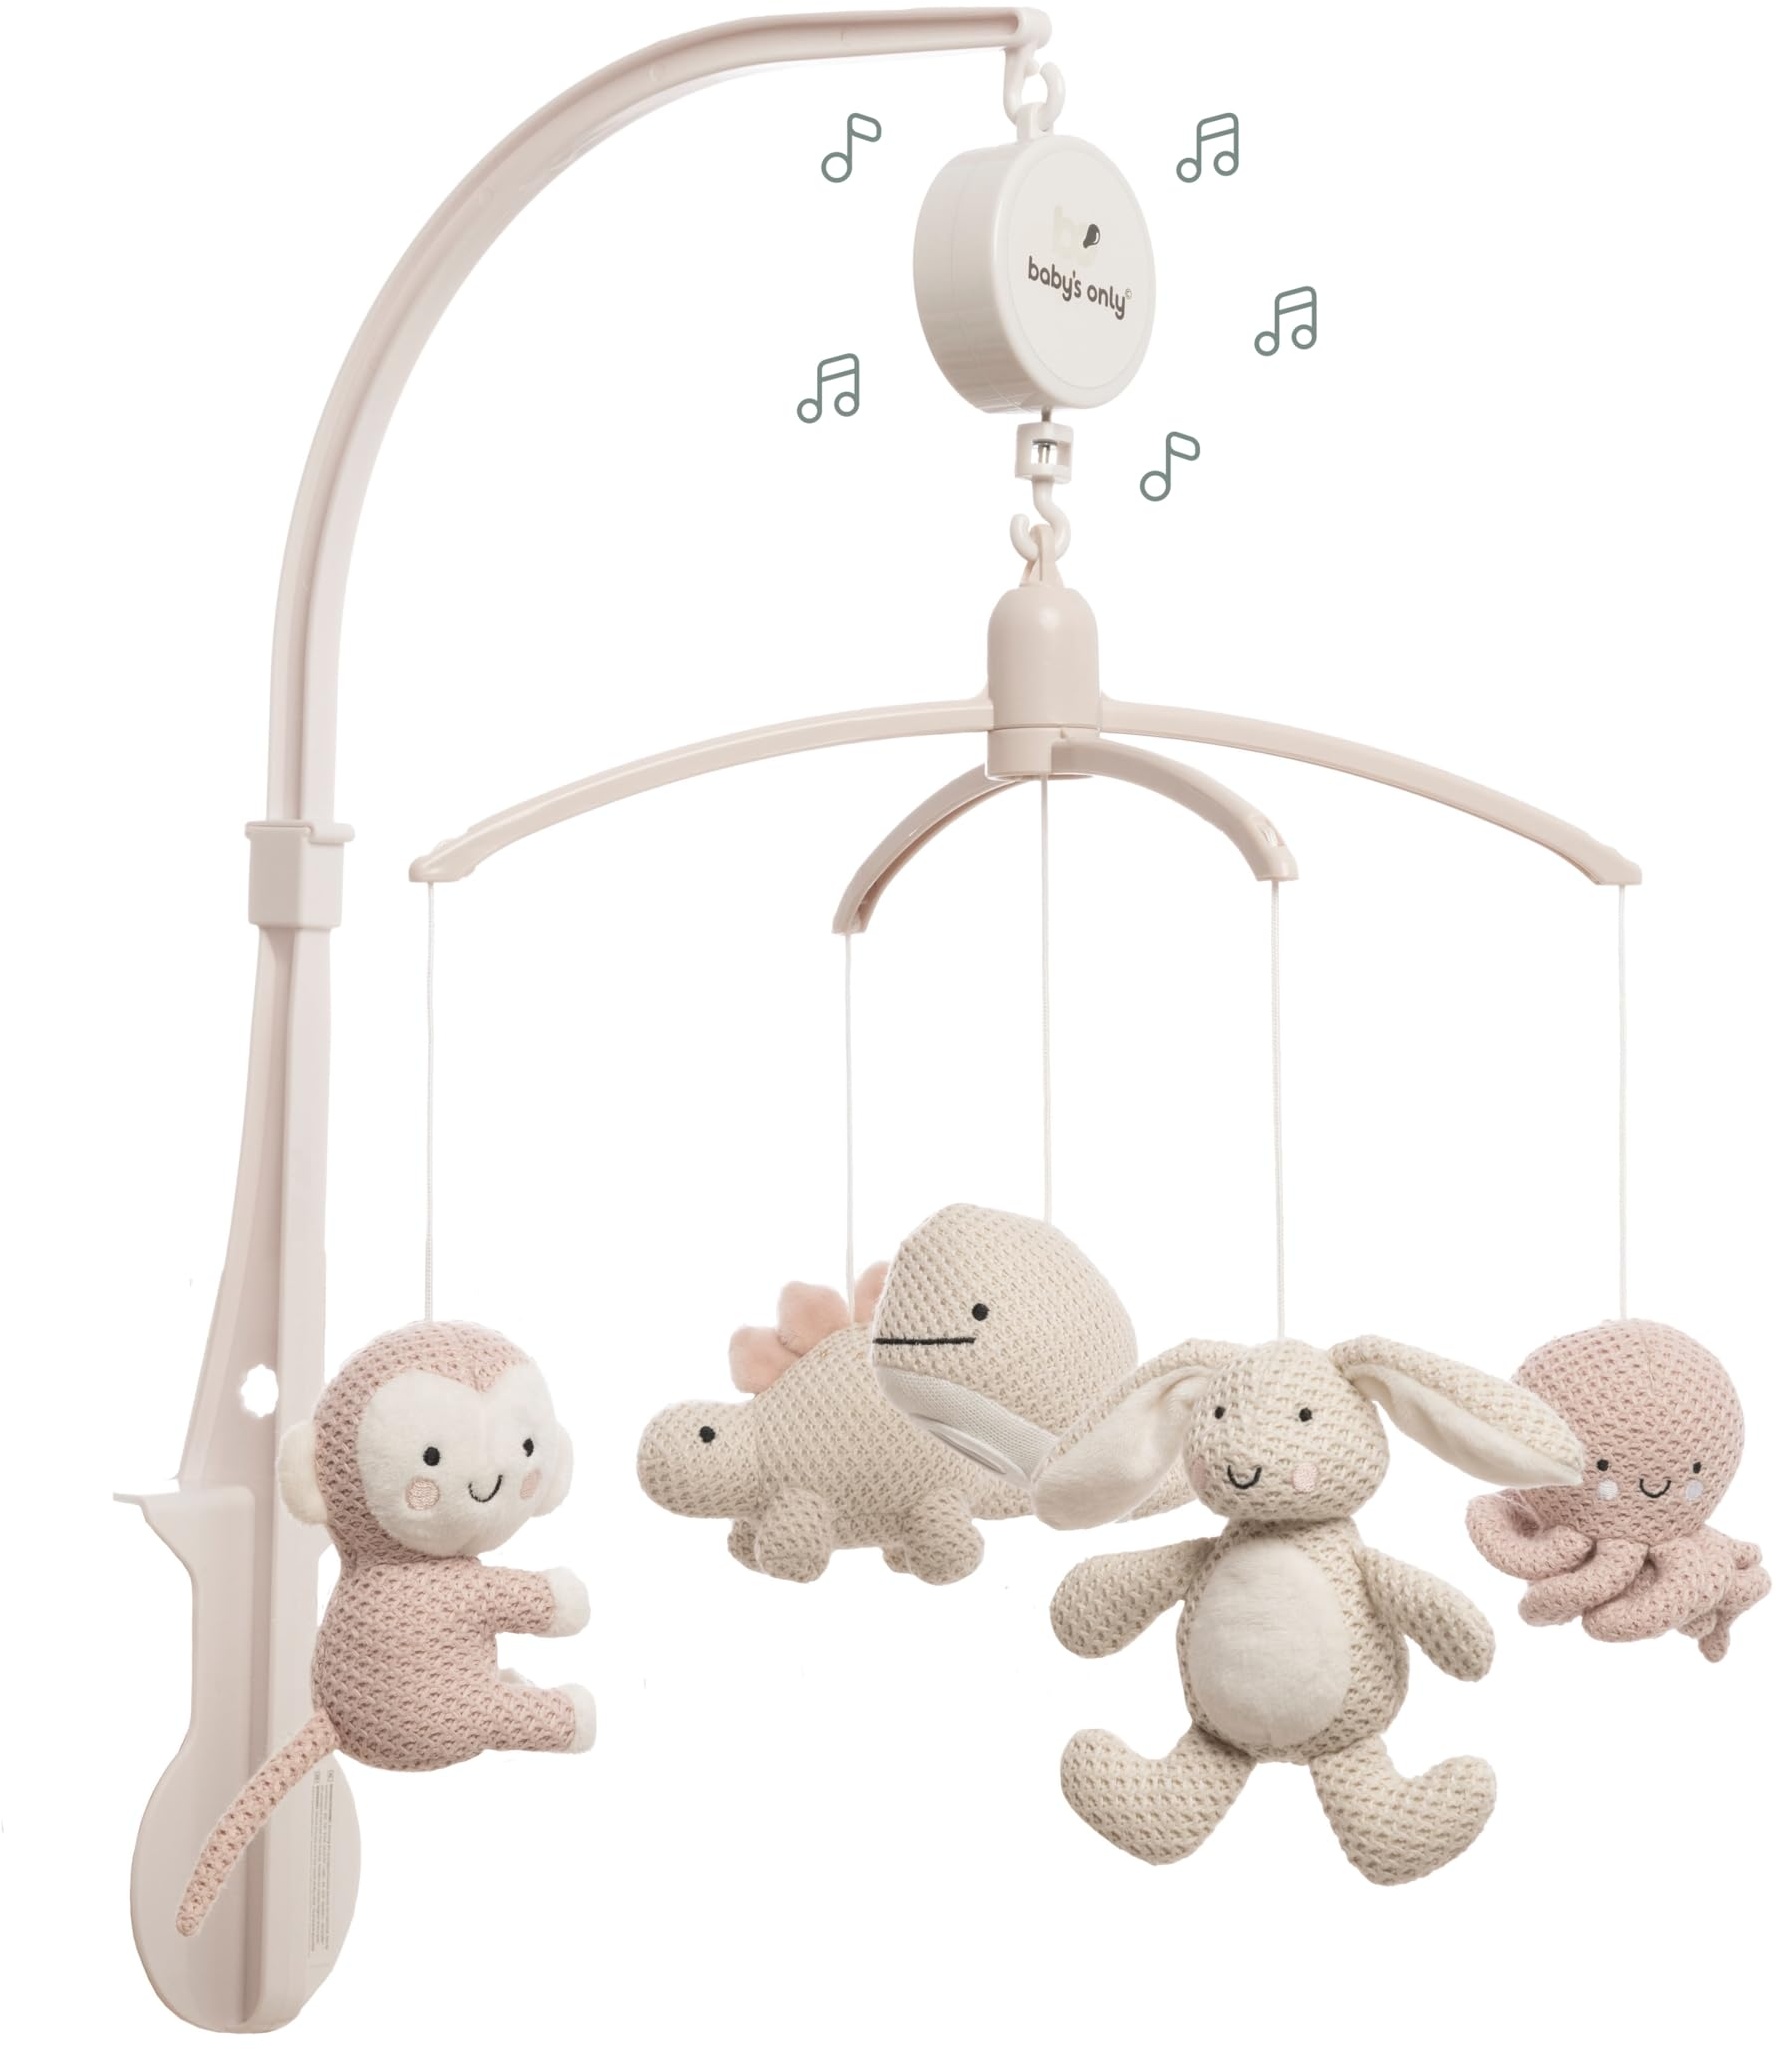 Baby's Only - Musik Mobile Baby Animals - Mit gestrickten Figuren - Baby Spieluhr mit Musik - Einfach anzubringen - Mobile Baby mit Musik - Sanfte Farben - Für Mädchen - Alt Rosa/Warm Linen